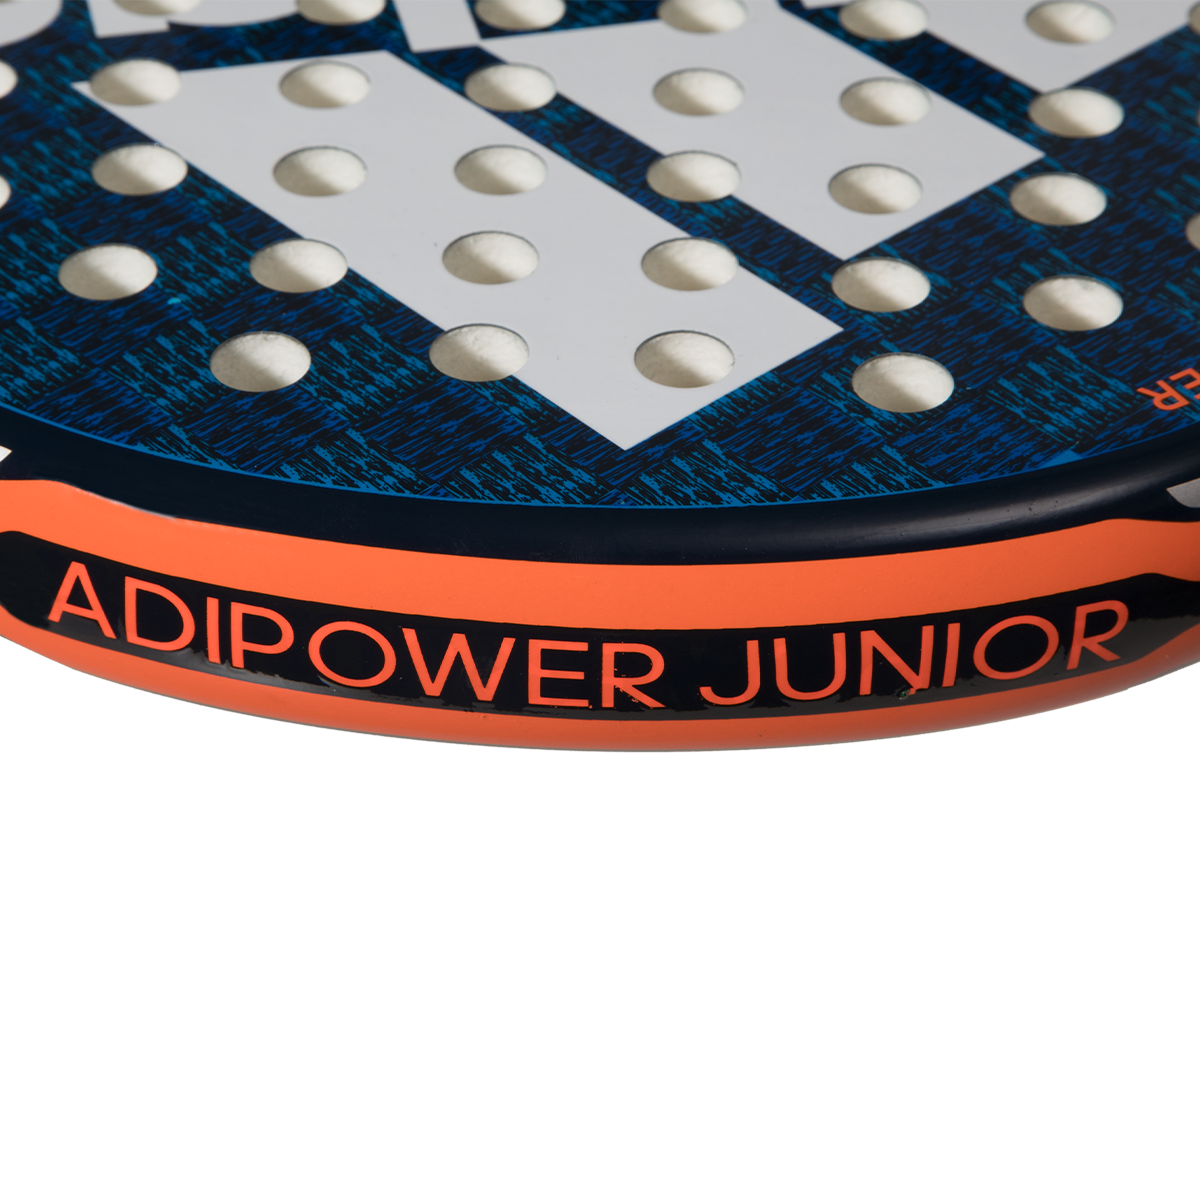 Adipower Junior 3.1 2022